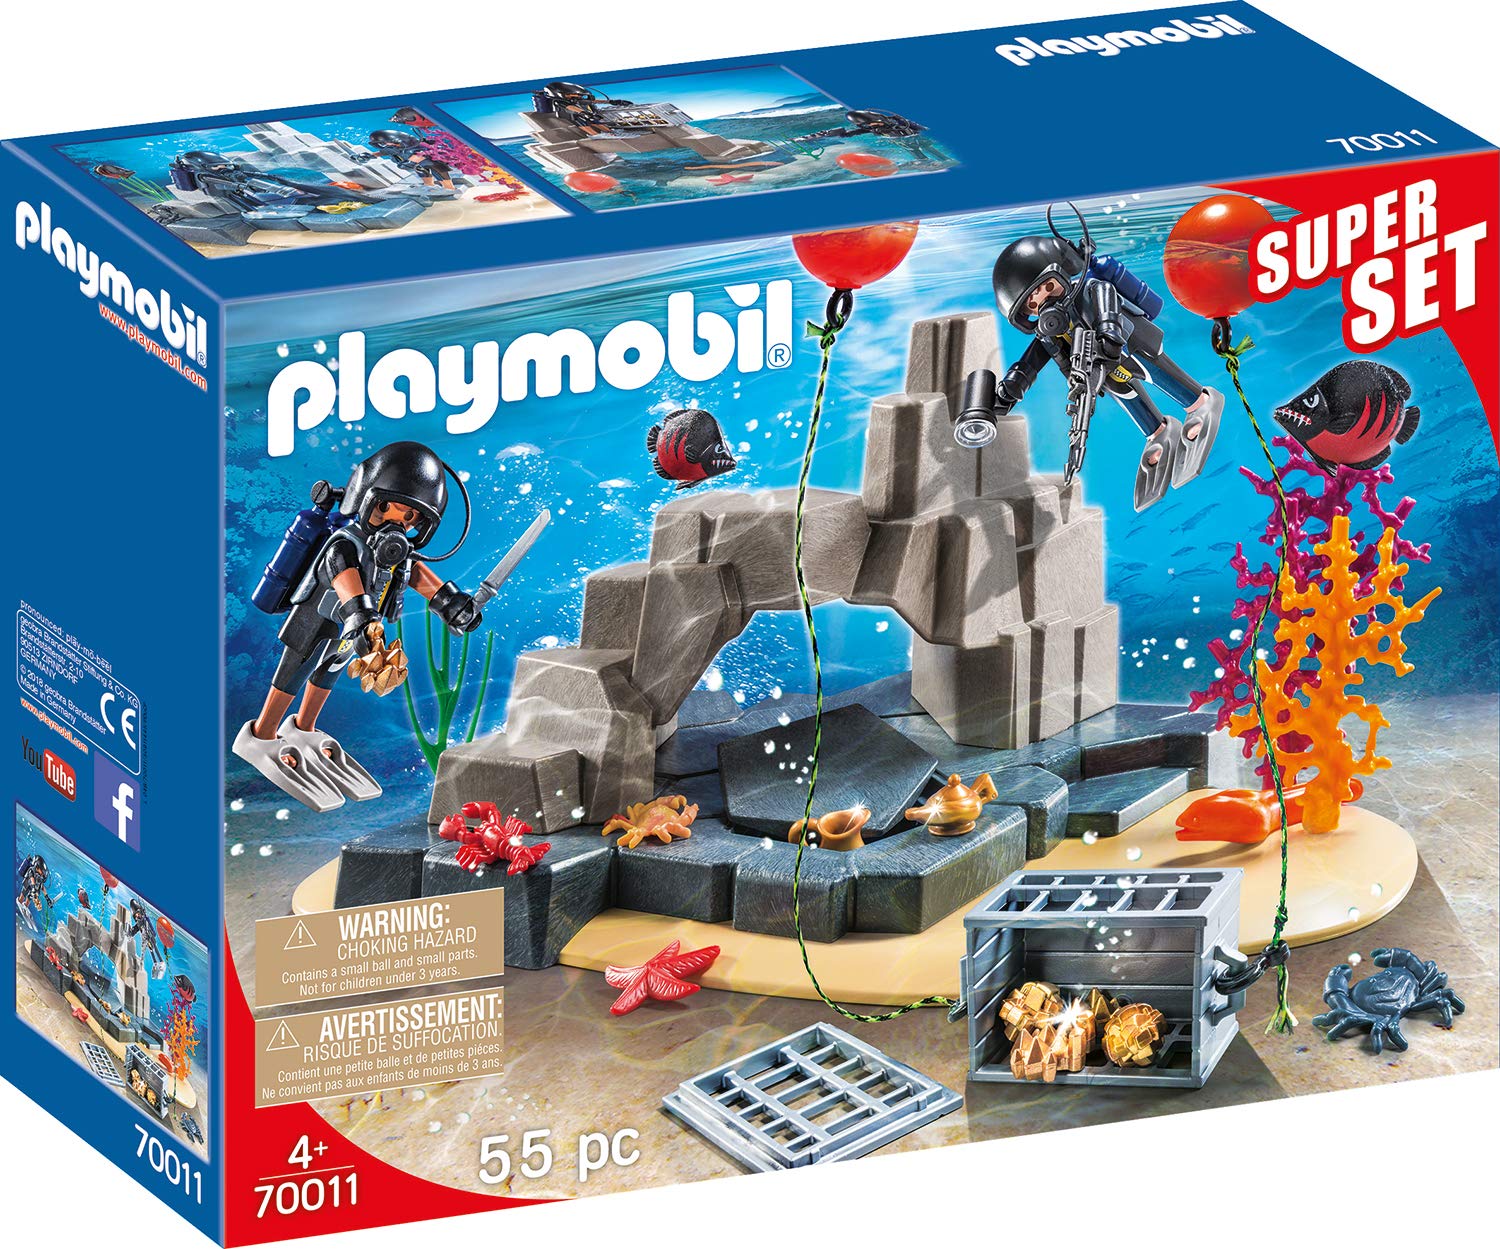 Playmobil Superset Sek 70011 Diving Insert Multi-Coloured